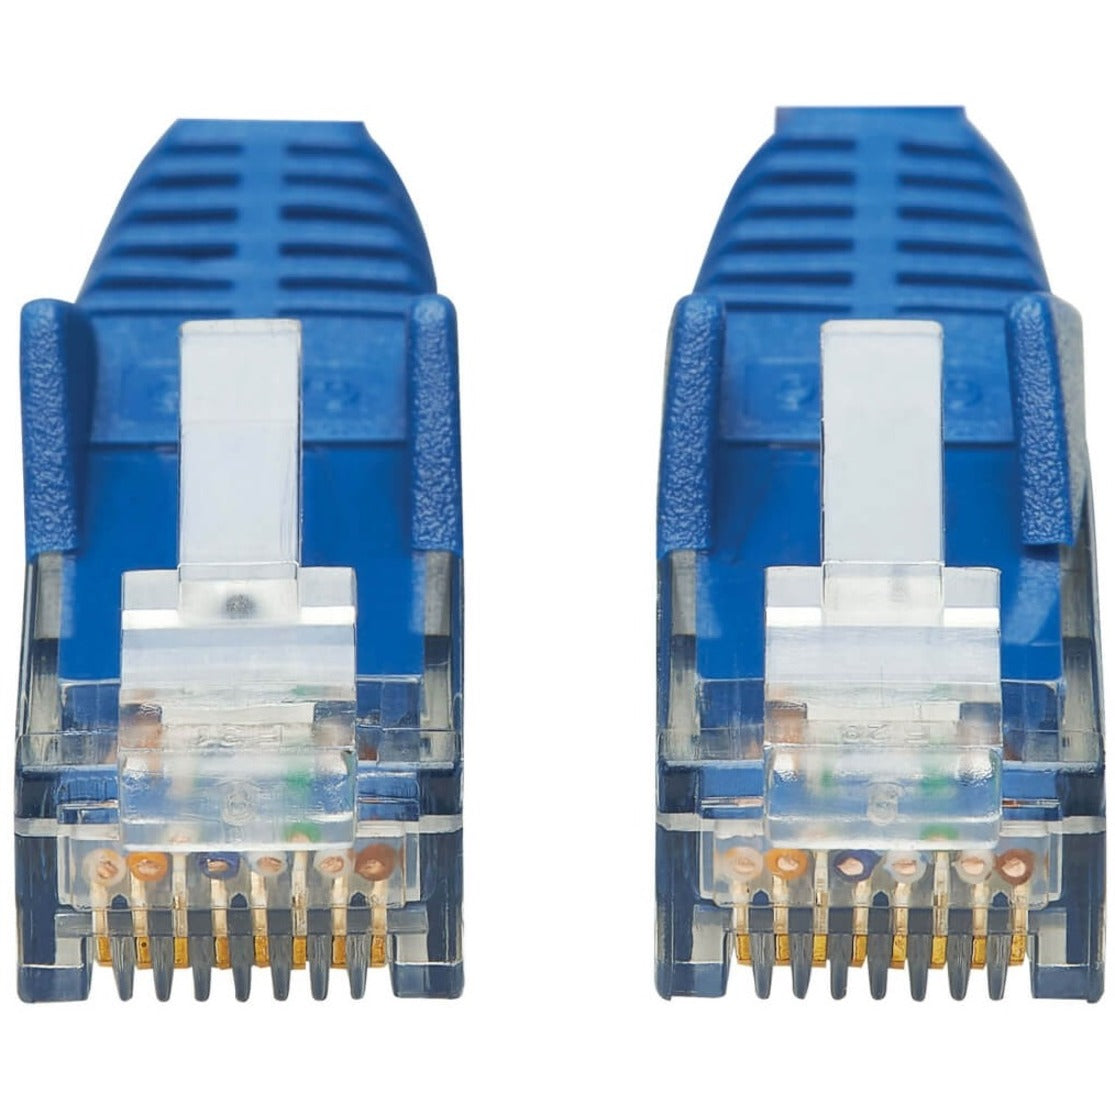 Tripp Lite N201P-006-BL Cat6 UTP Patch Cable (RJ45), 6 ft. Blue, Stress Resistant, Flexible, PoE